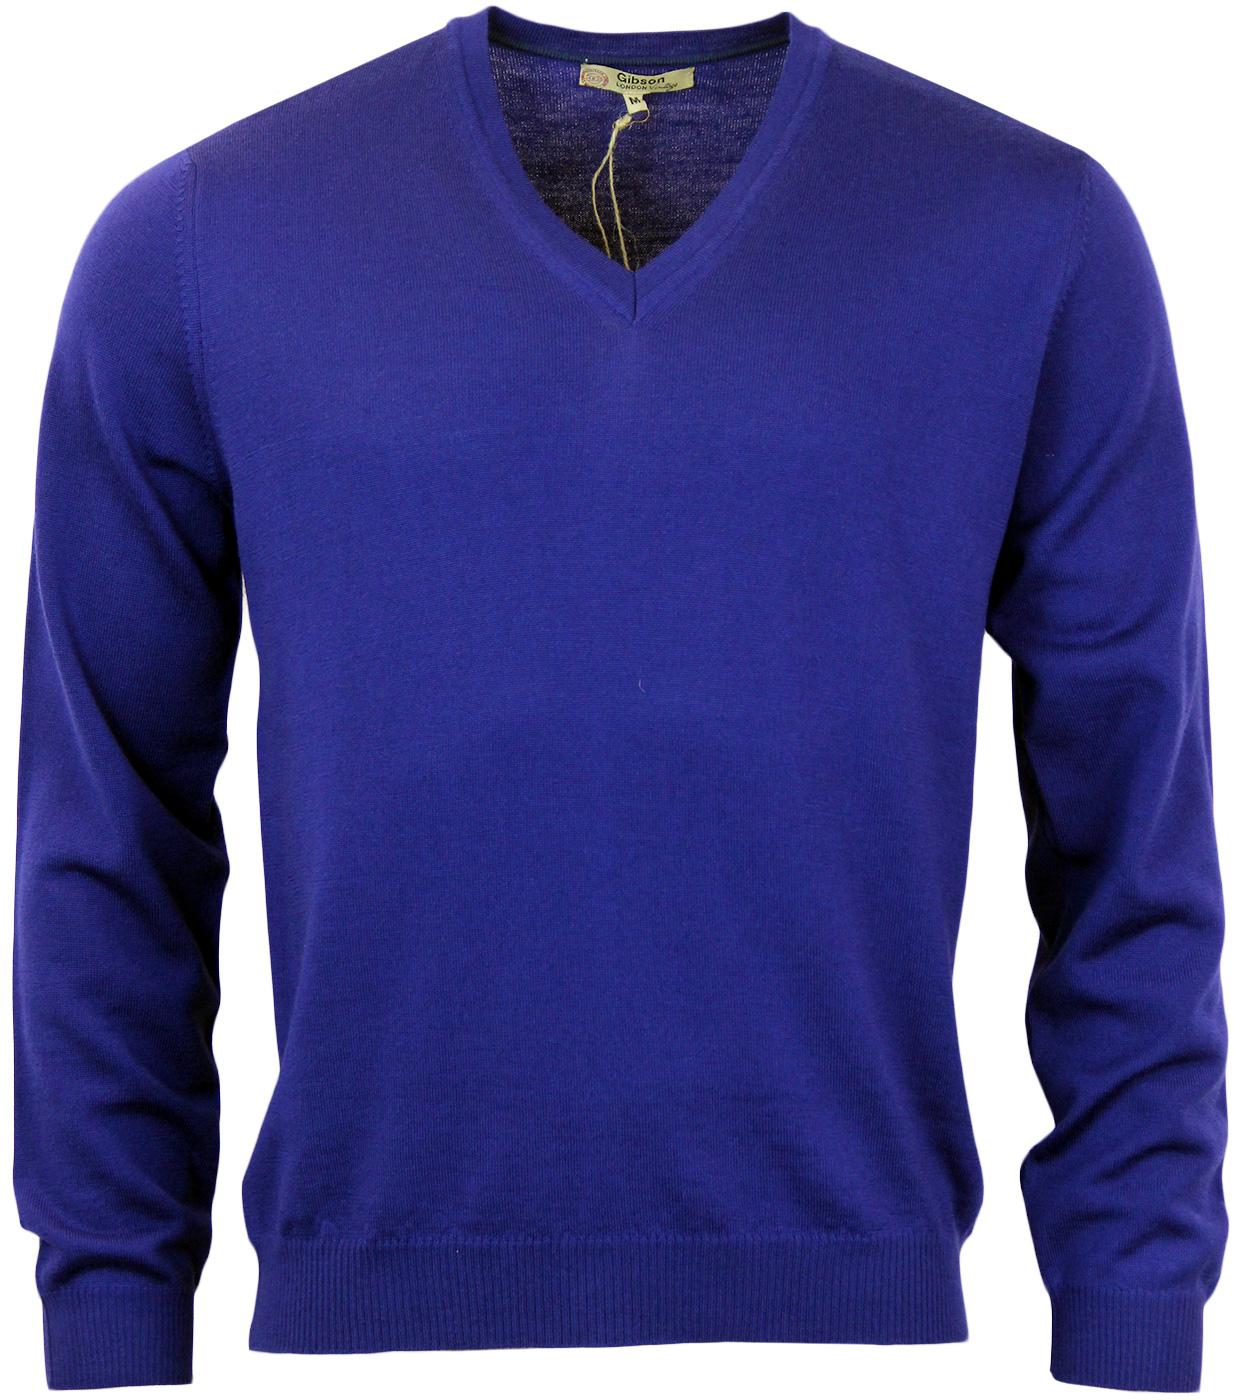 GIBSON LONDON Retro Mod 60s Merino V Neck Sweater in Cobalt